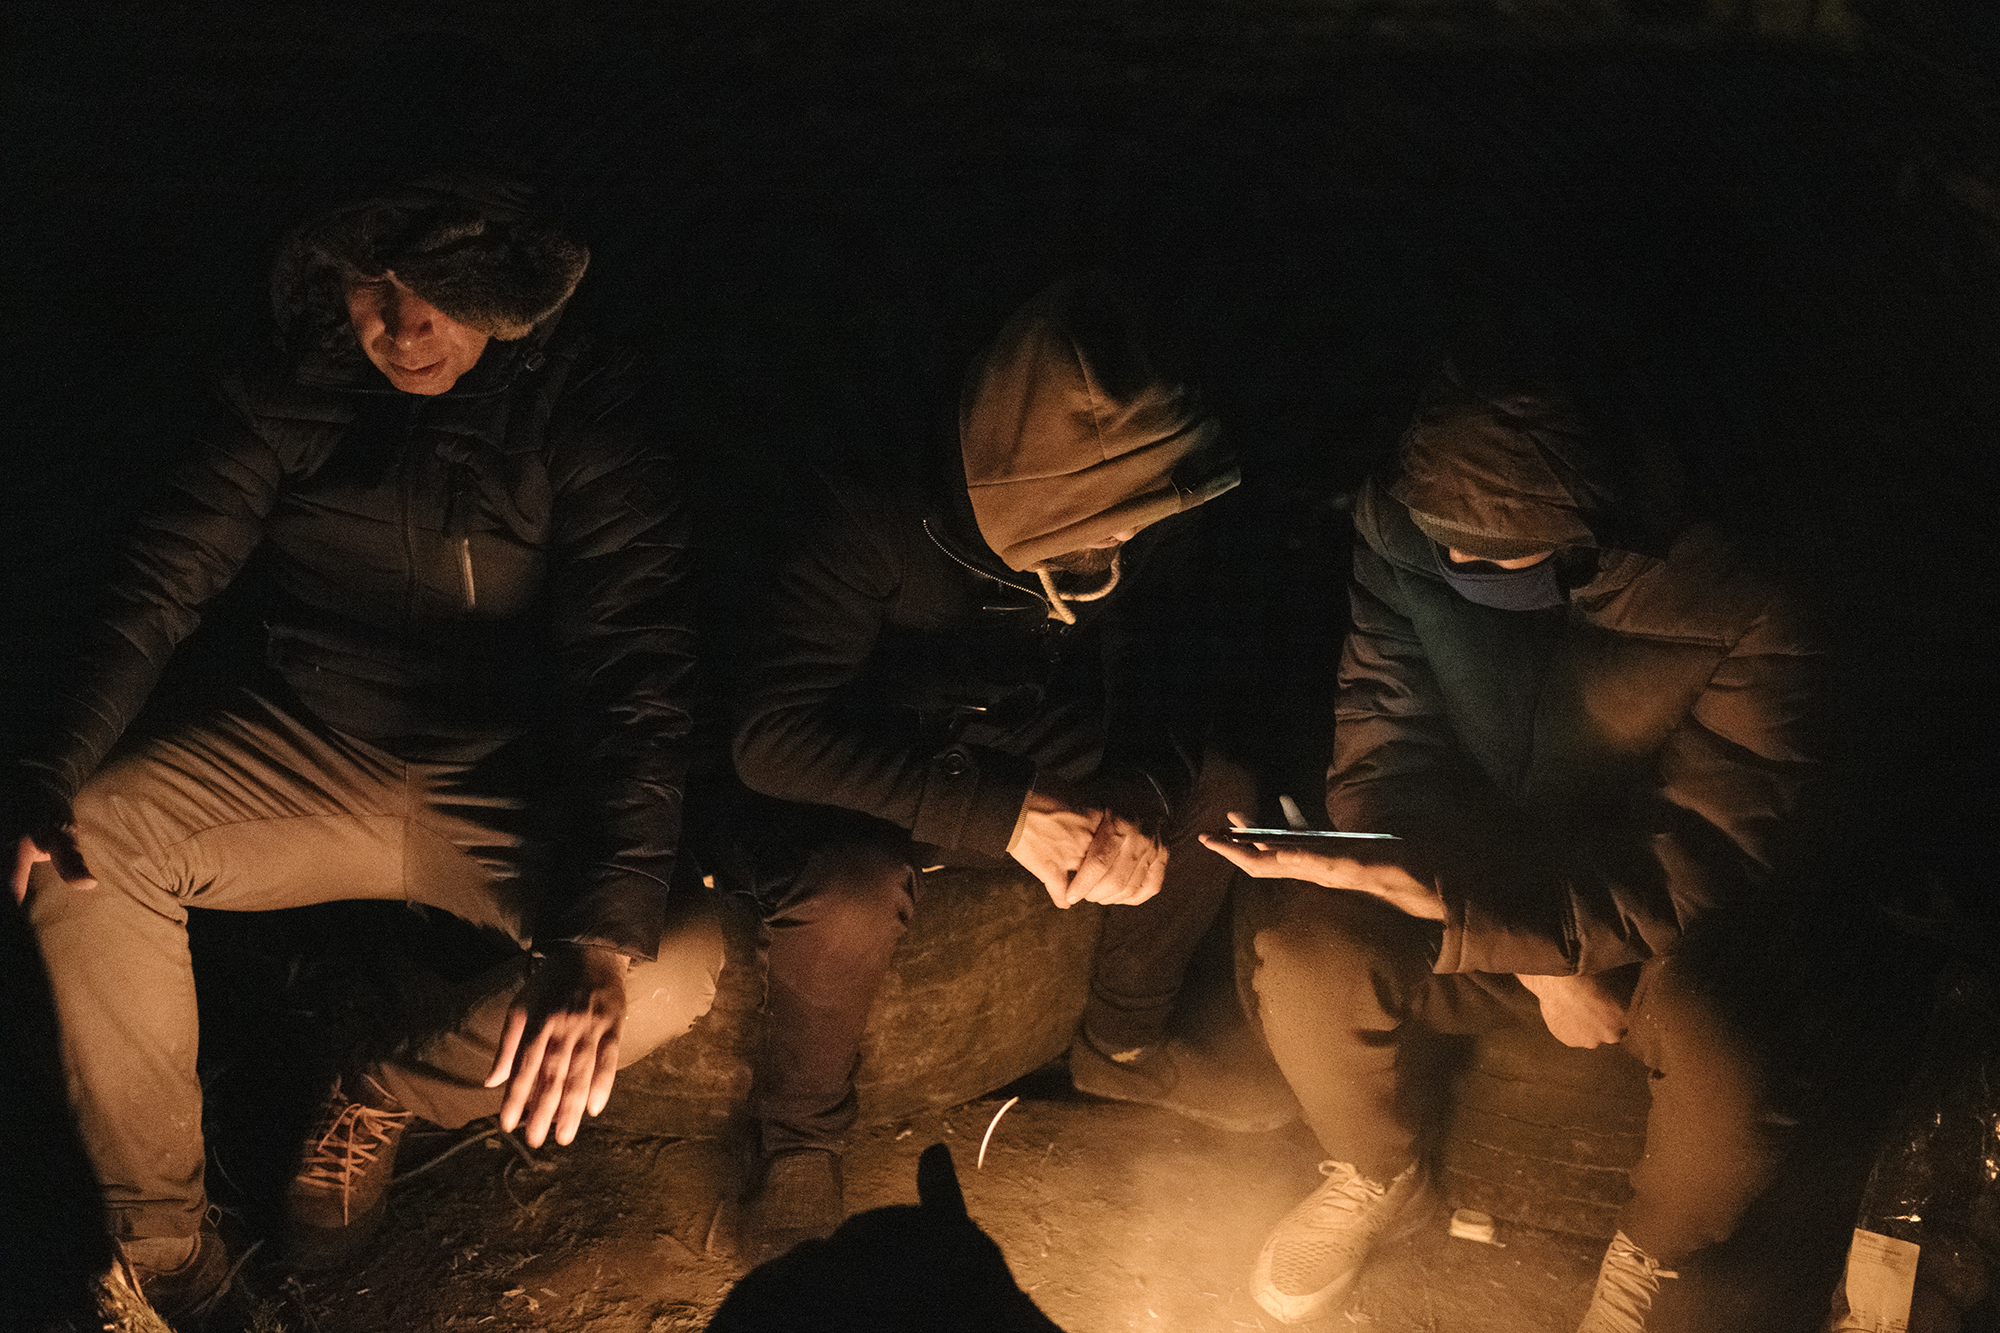 Un groupe d'Iraniens se réchauffe auprès d'un feu. La veille, les gendarmes sont venus les expulser du terrain où ils dorment. Le lendemain matin, ils déguerpiront avant leur arrivée. © Xavier Schwebel